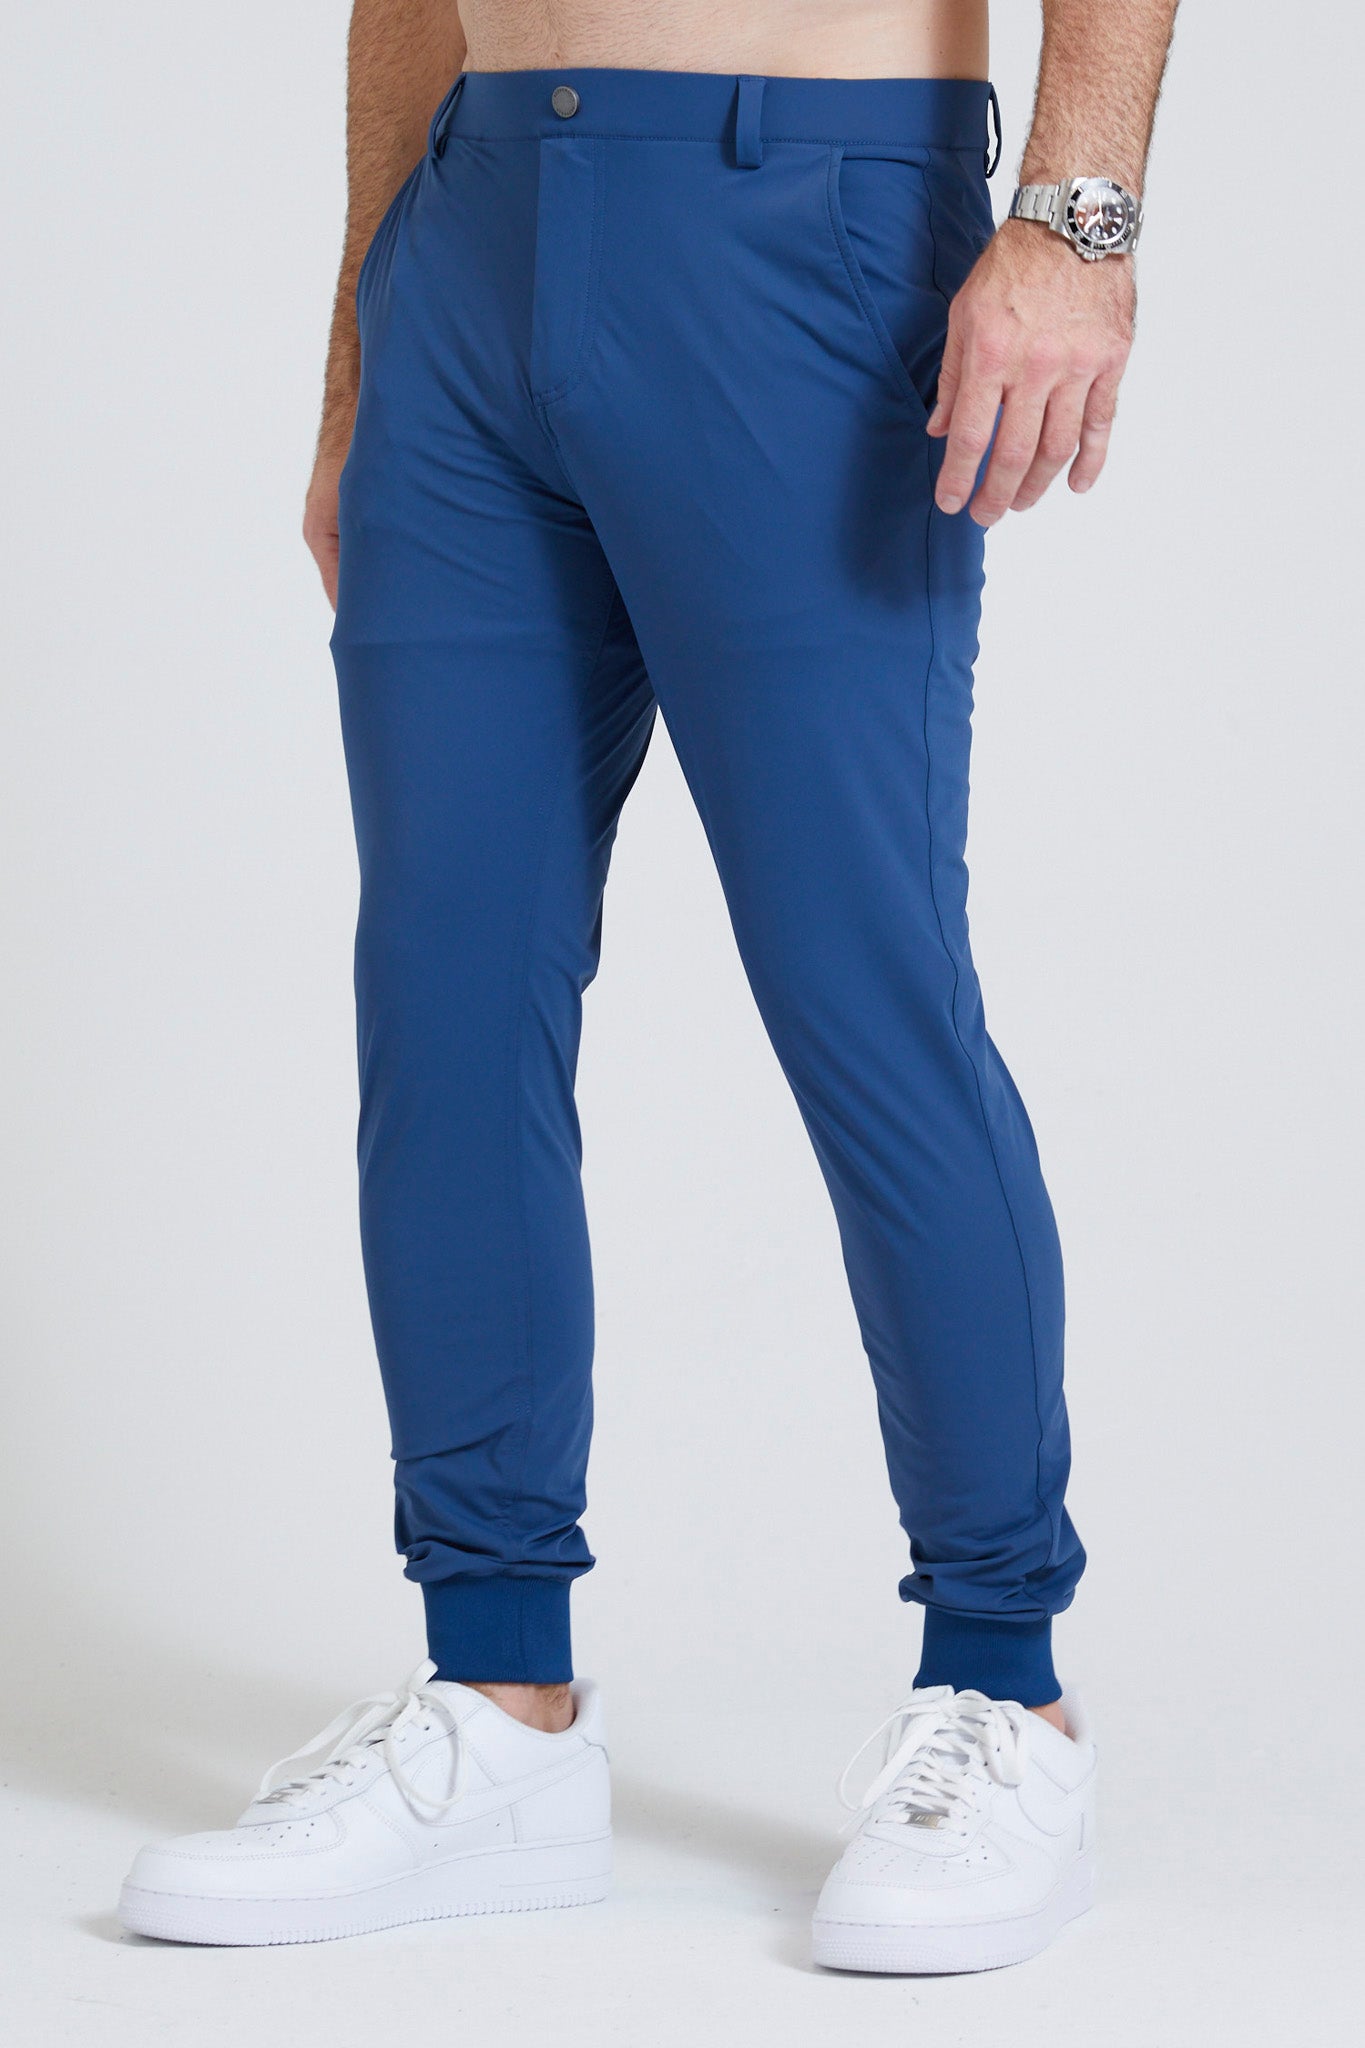 Men's Workout Pants, Joggers & Sweatpants in Blue